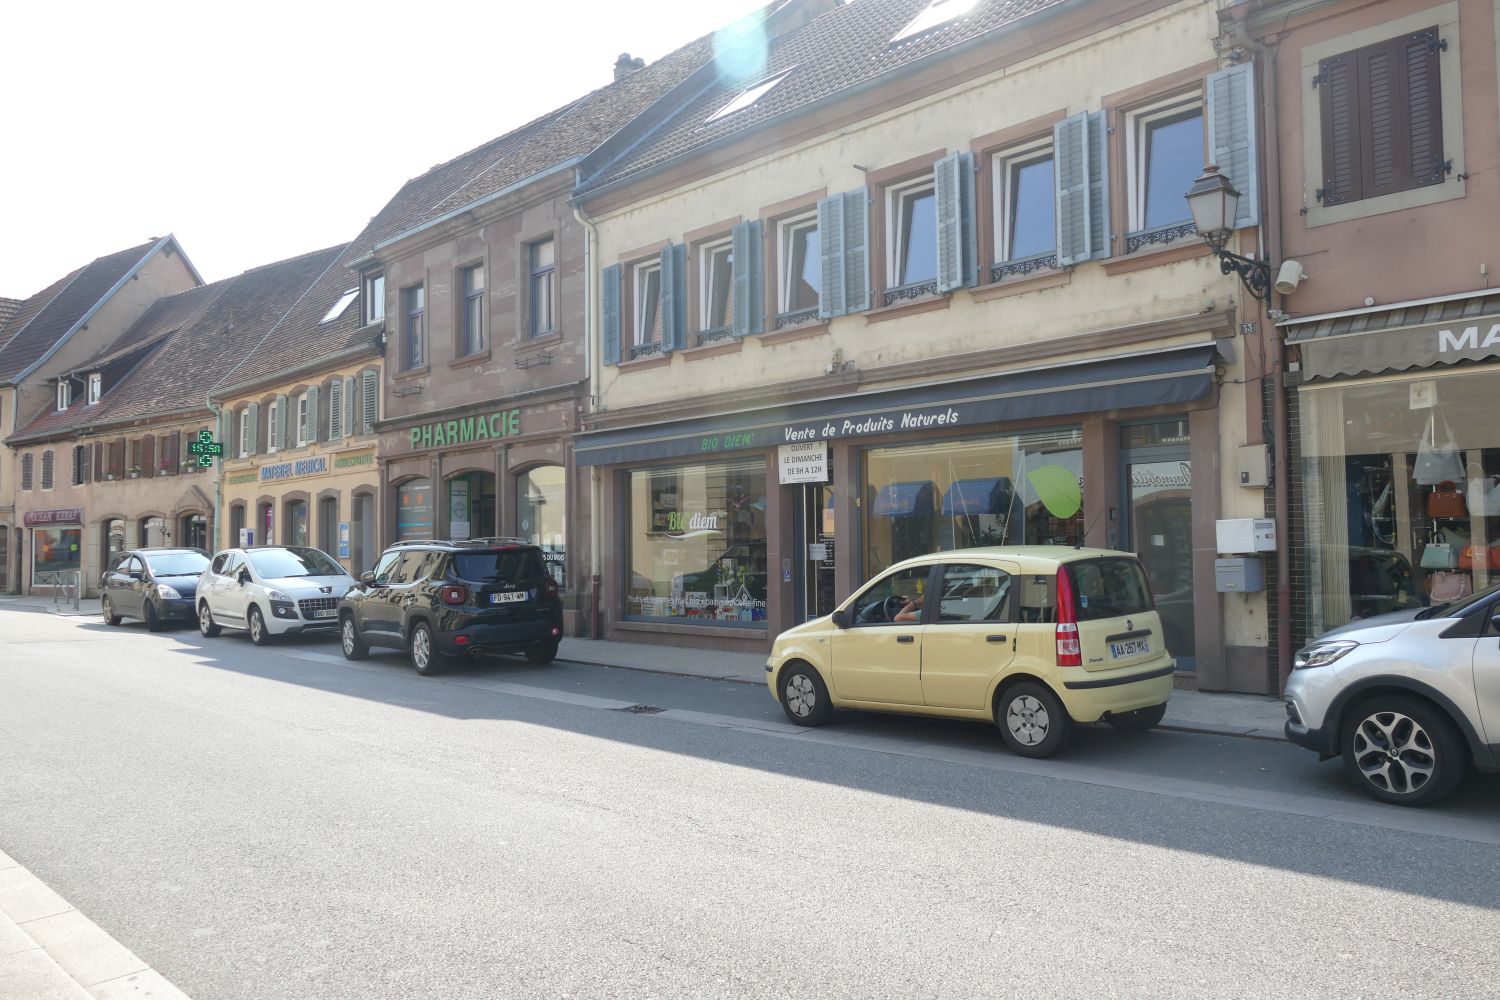 Une plateforme en ligne pour acheter local en Alsace Bossue 